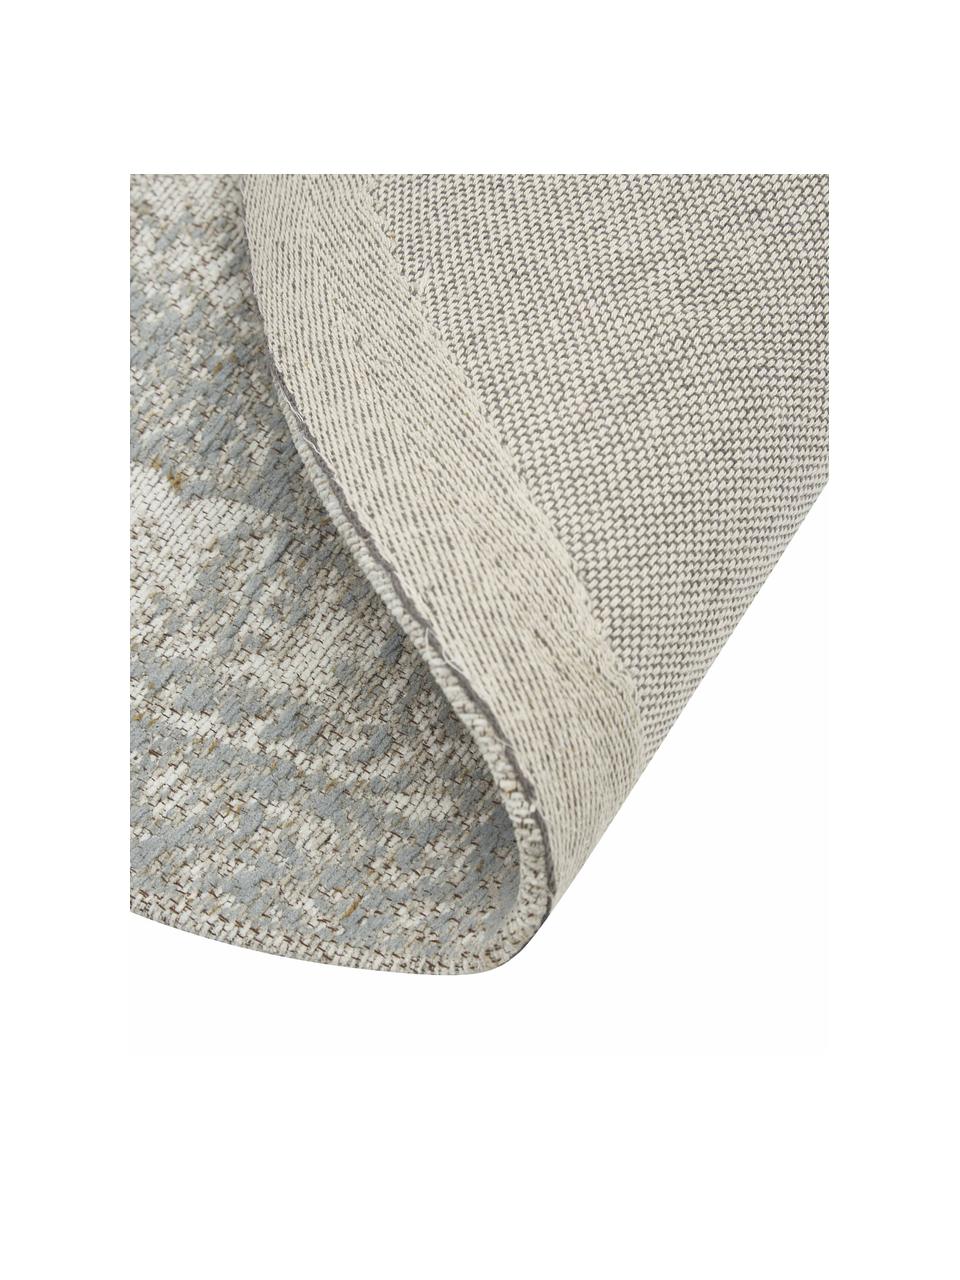 Okrągły ręcznie tkany dywan szenilowy w stylu vintage Magalie, 95% bawełna-szenil, 5% poliester, Beżowy, Ø 120 cm (Rozmiar S)